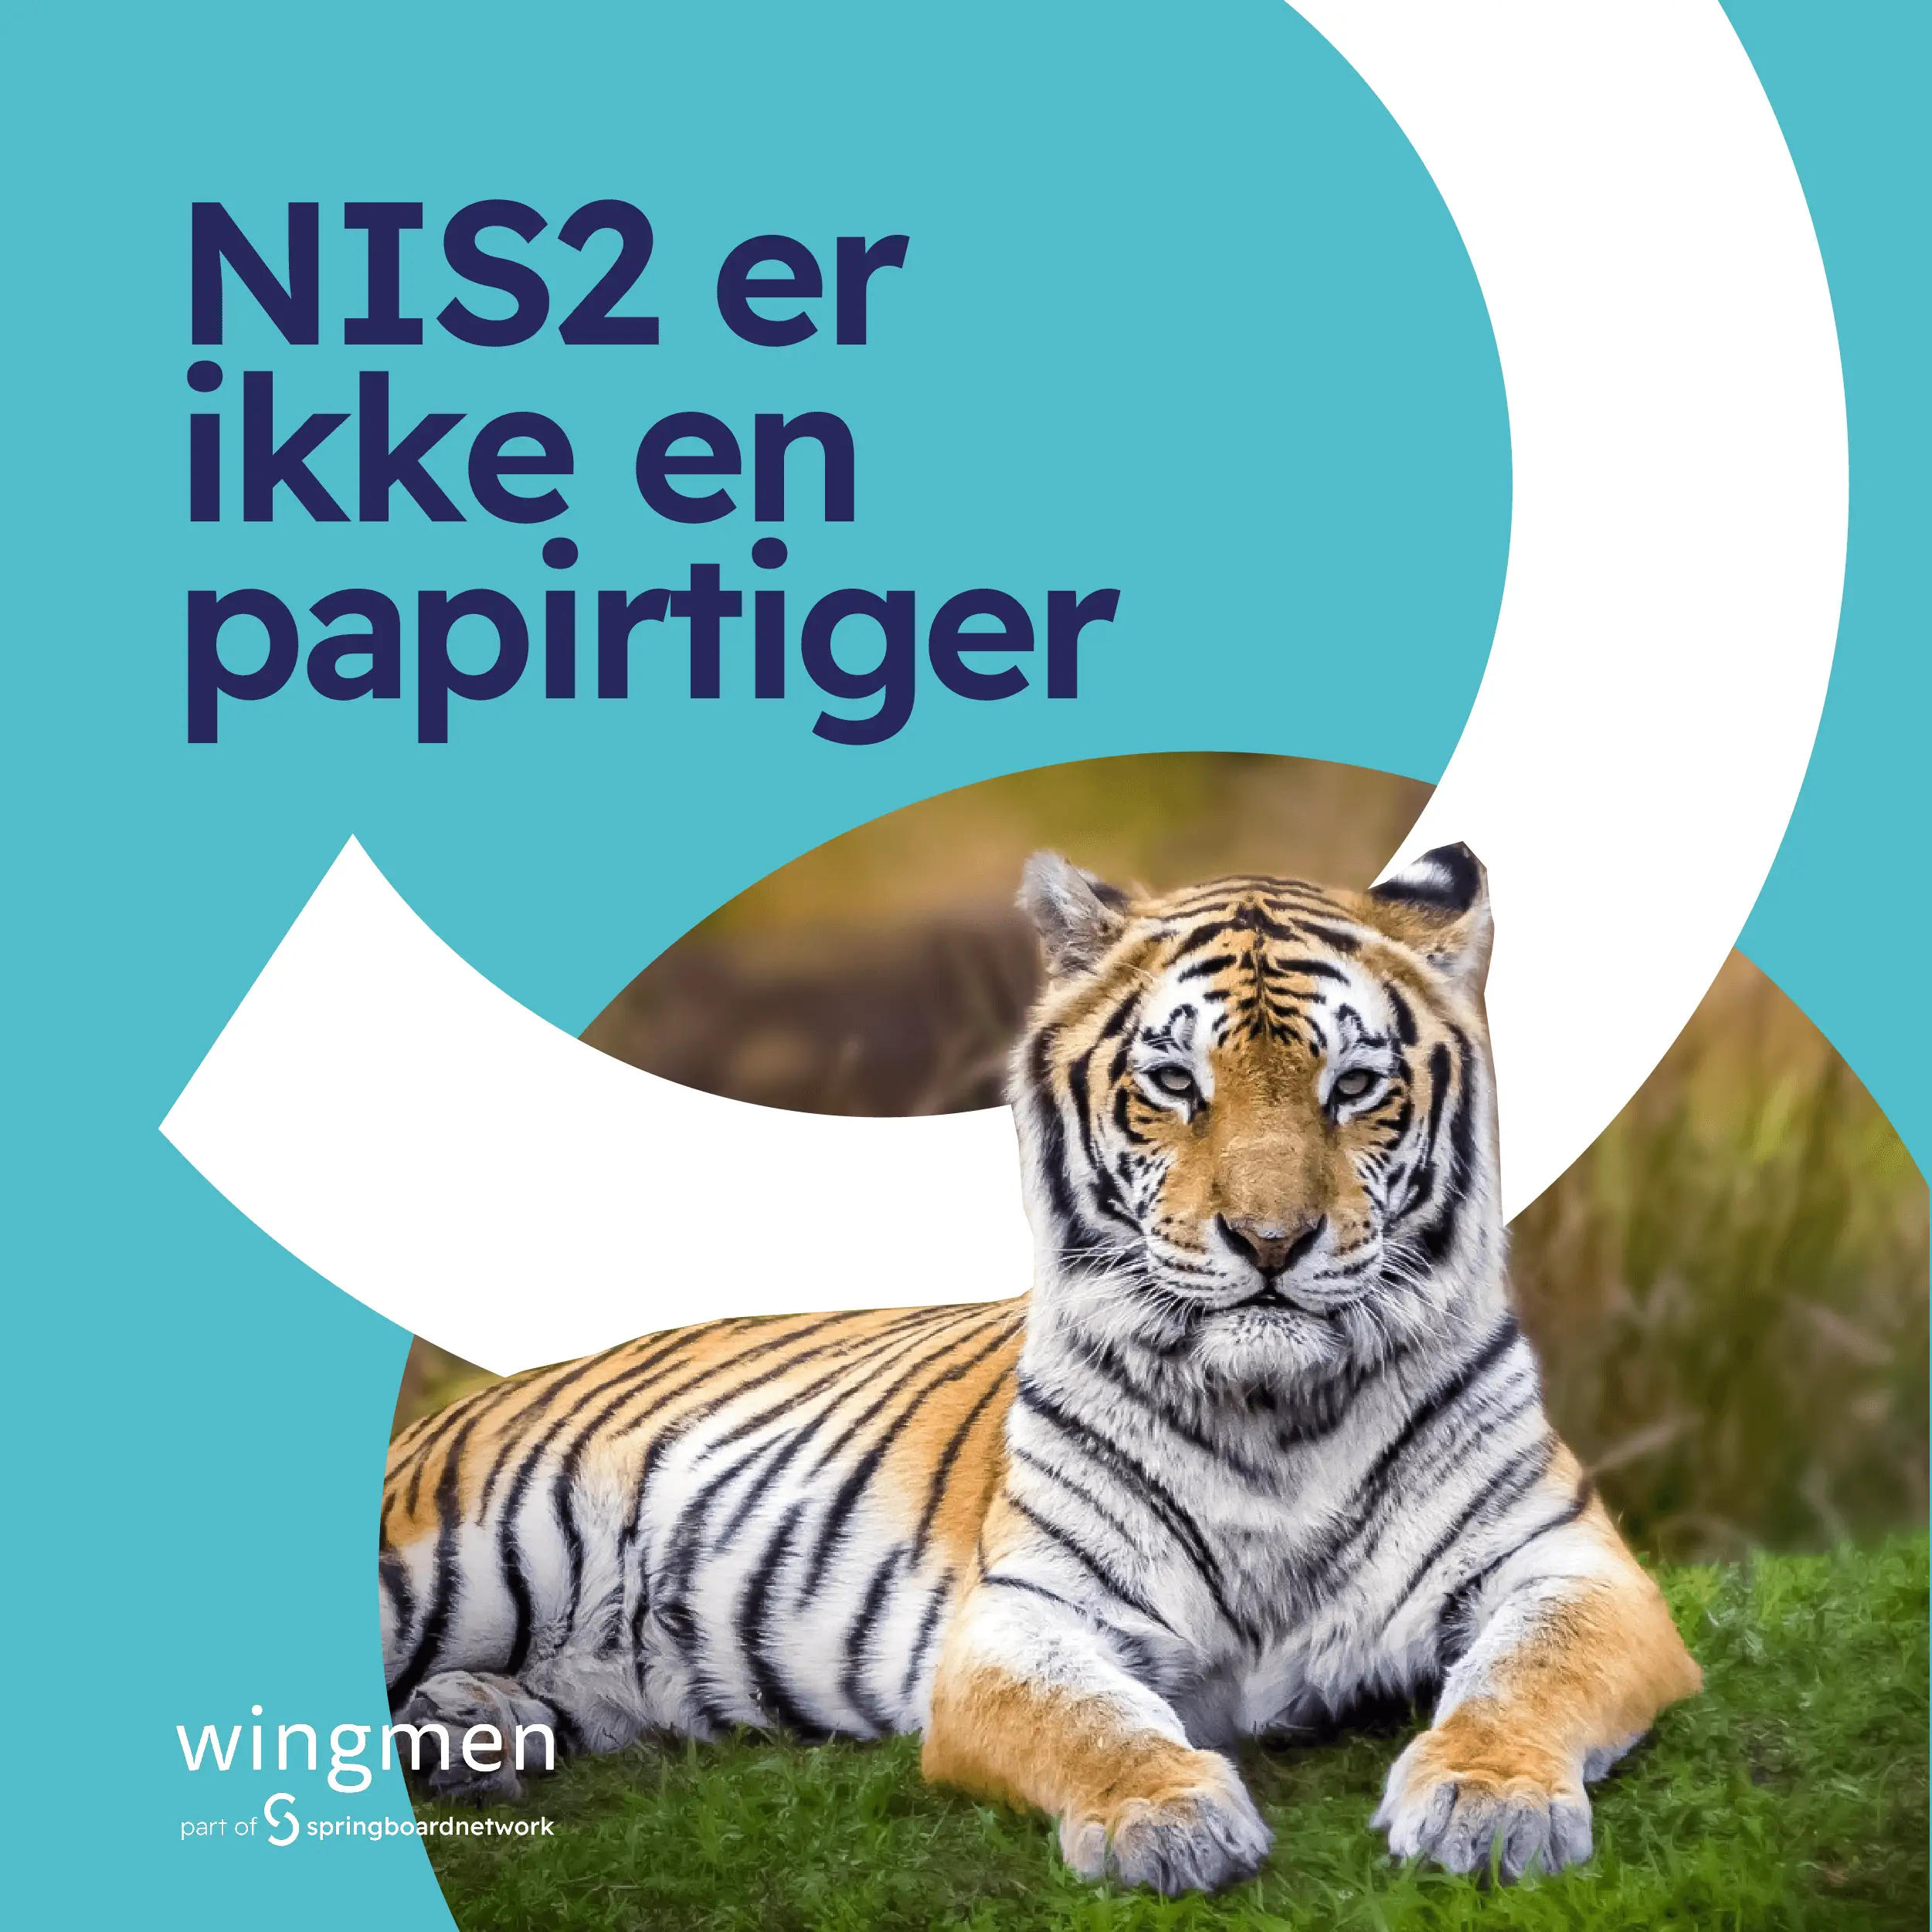 NIS2 er ikke en papirtiger